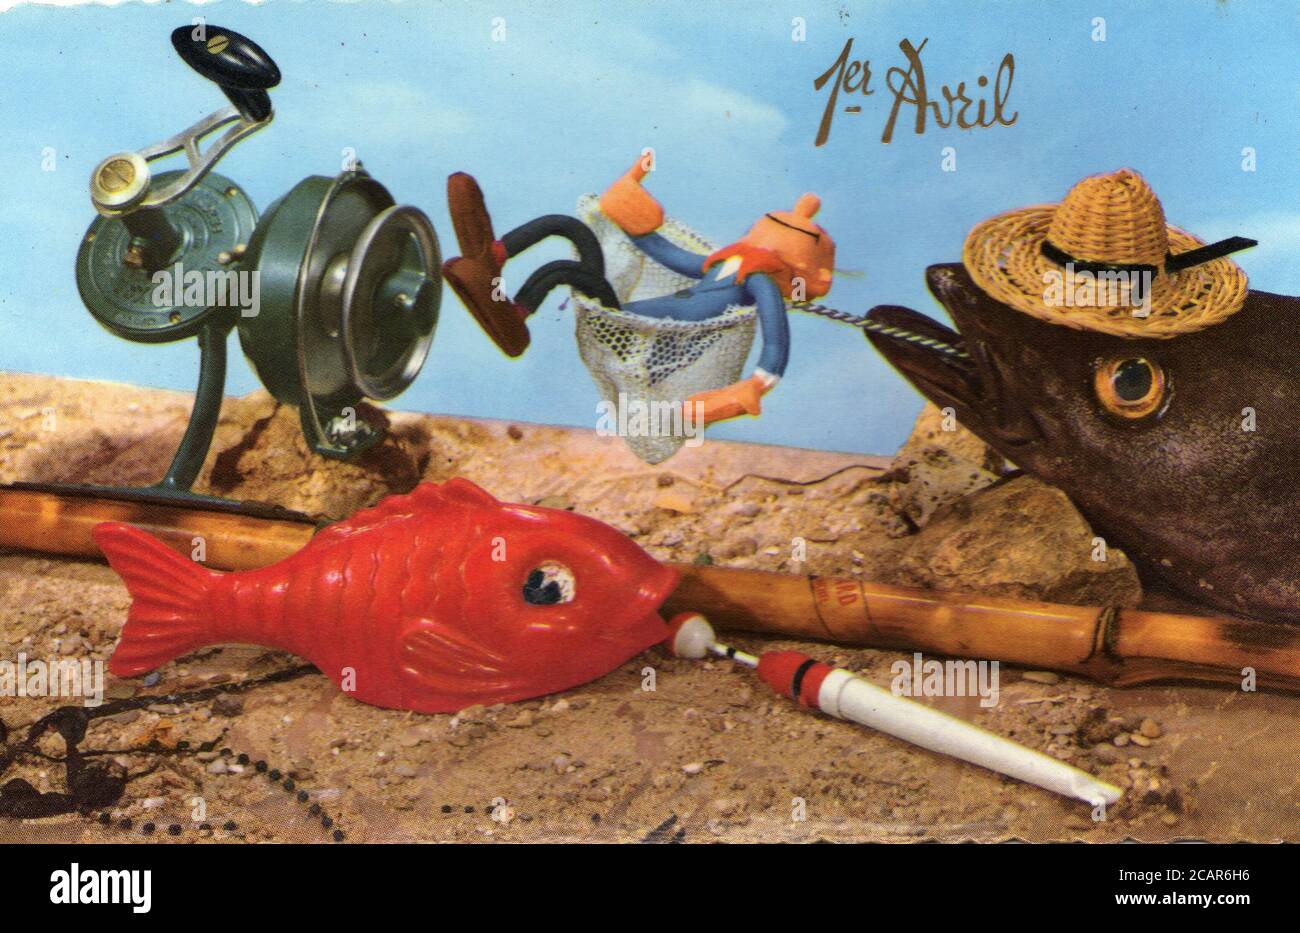 Carte postale 1er avril avec figurine Fantasio vers 1960. Fantasio est un personnage de Fiction créé par Jean Doisy dans Le Journal de Spirou en 1942 Stockfoto